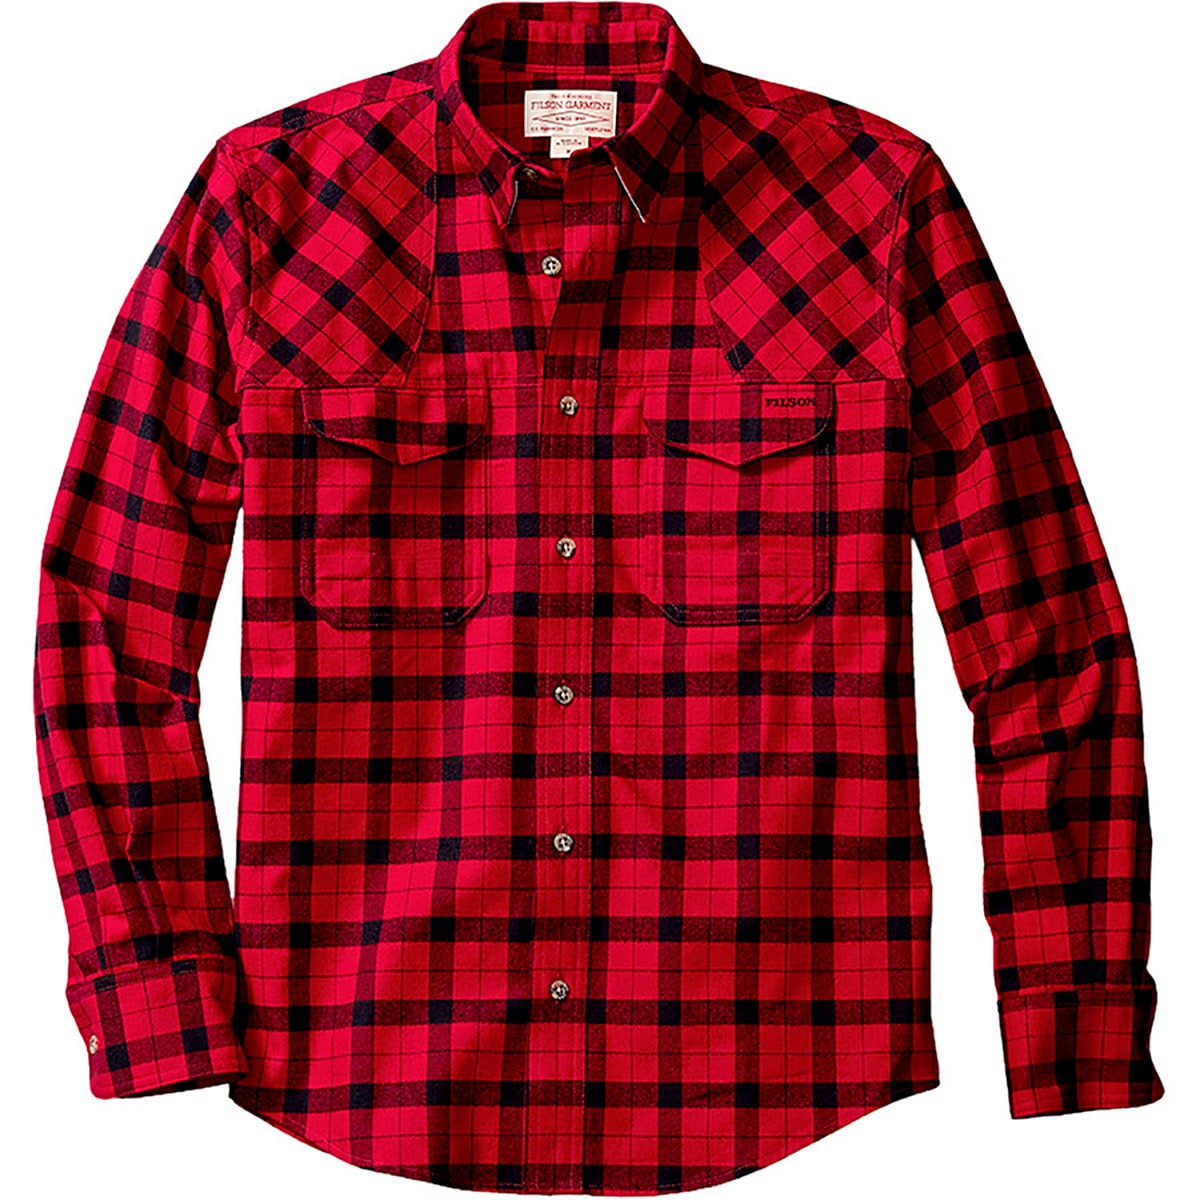 Filson Flannel Hunting Shirt - Long-Sleeve - Men's | eBay